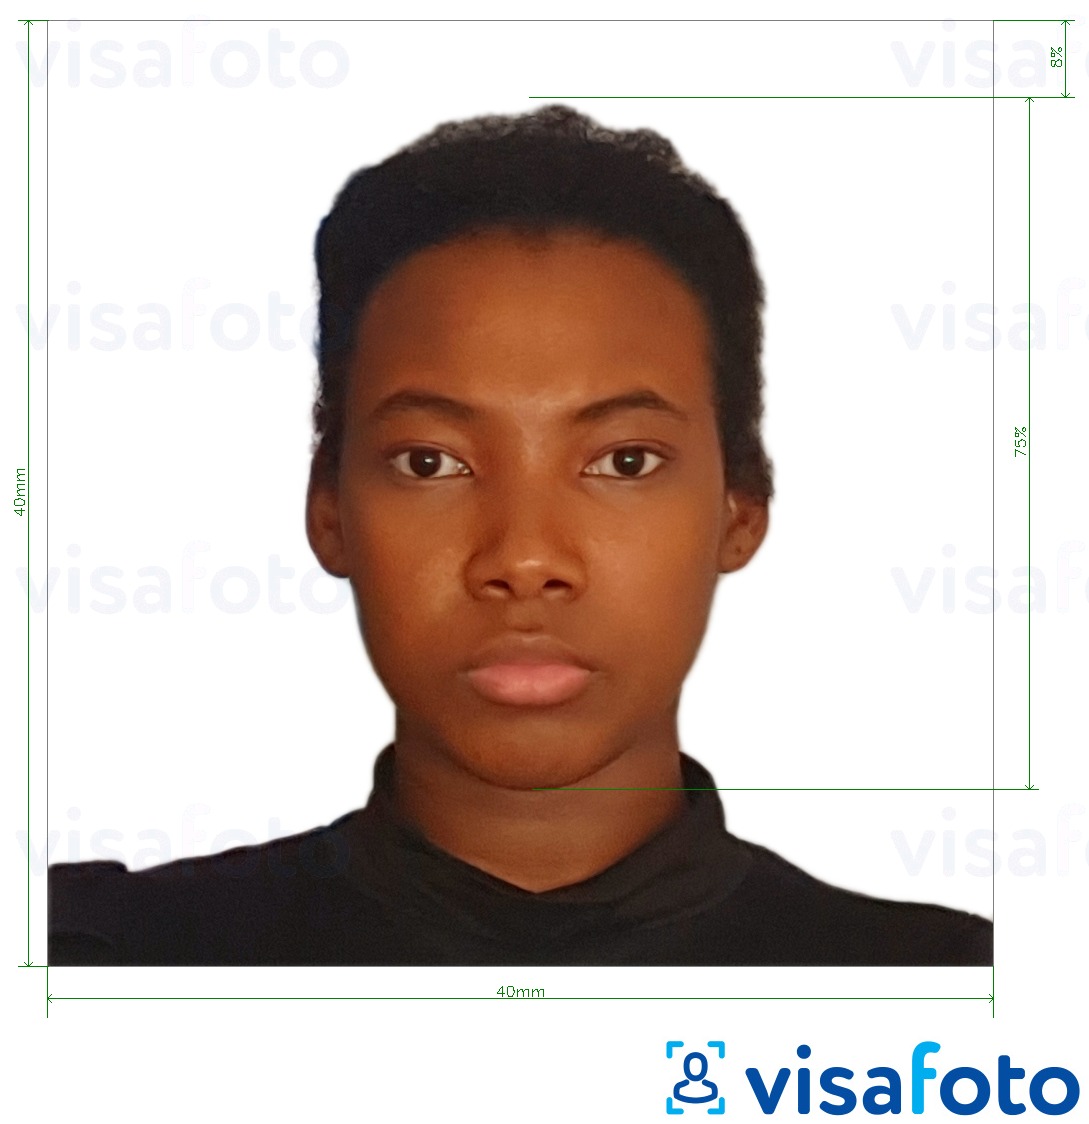 Przykład zdjęcia dla Paszport kameruński 4x4 cm (40x40 mm) z podaniem dokładnego rozmiaru.